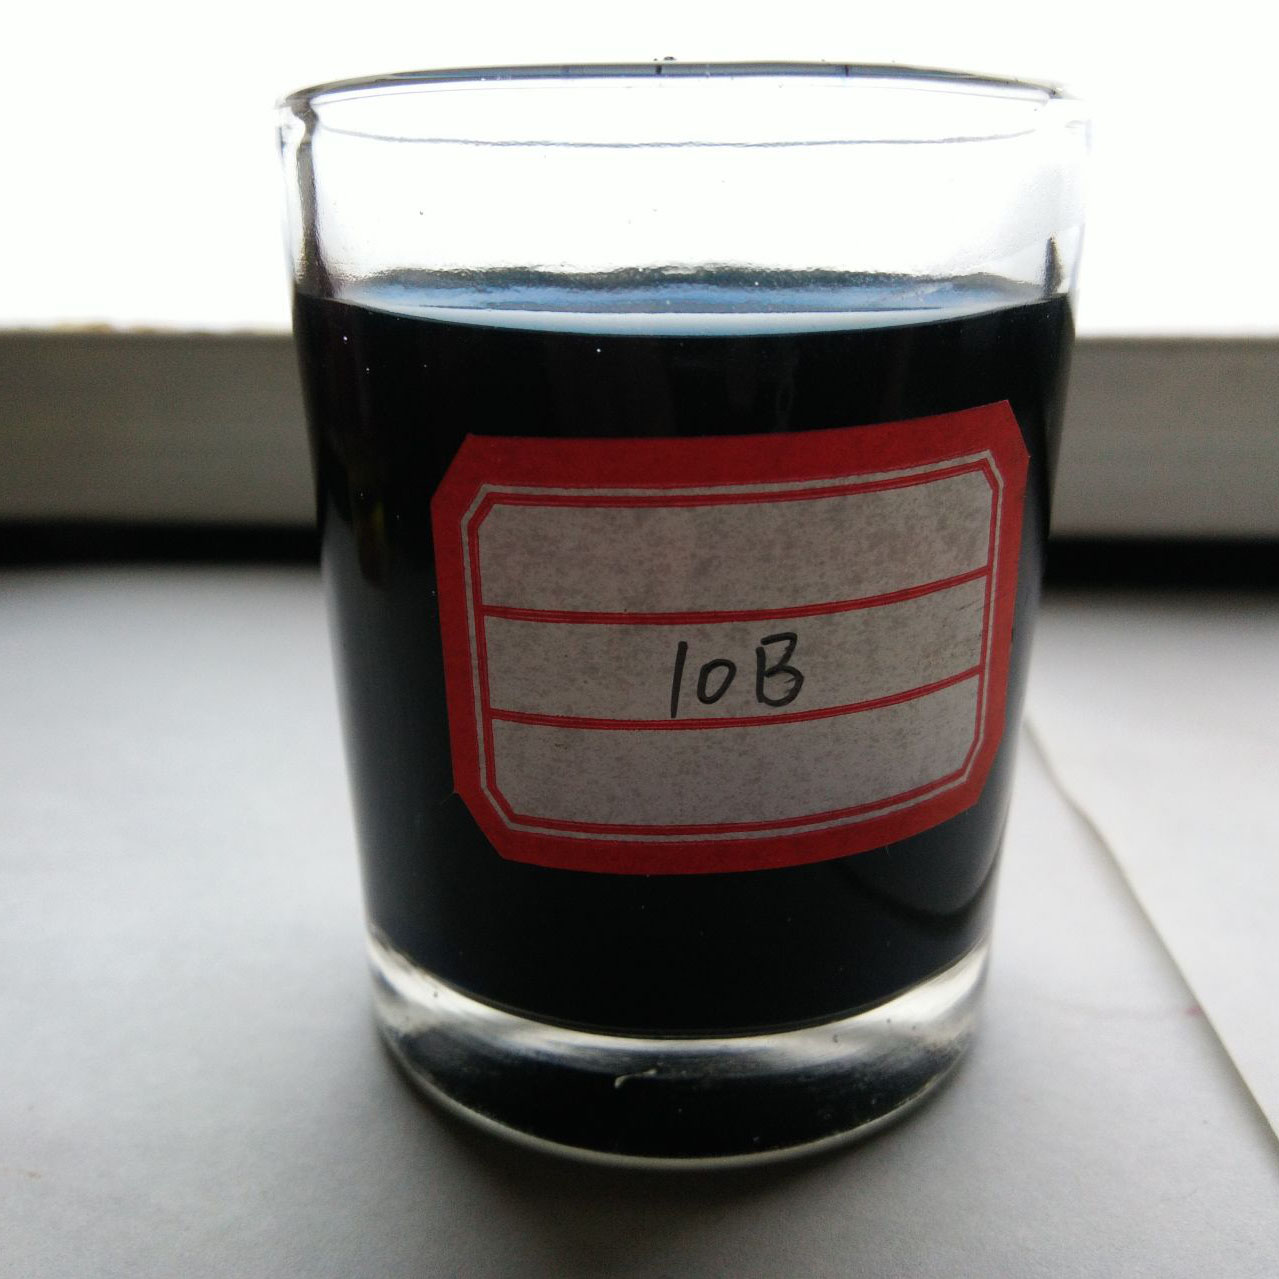 Beste prijs-kwaliteitverhouding Acid Black ATT 100% zwart poeder gebruikt op zijde